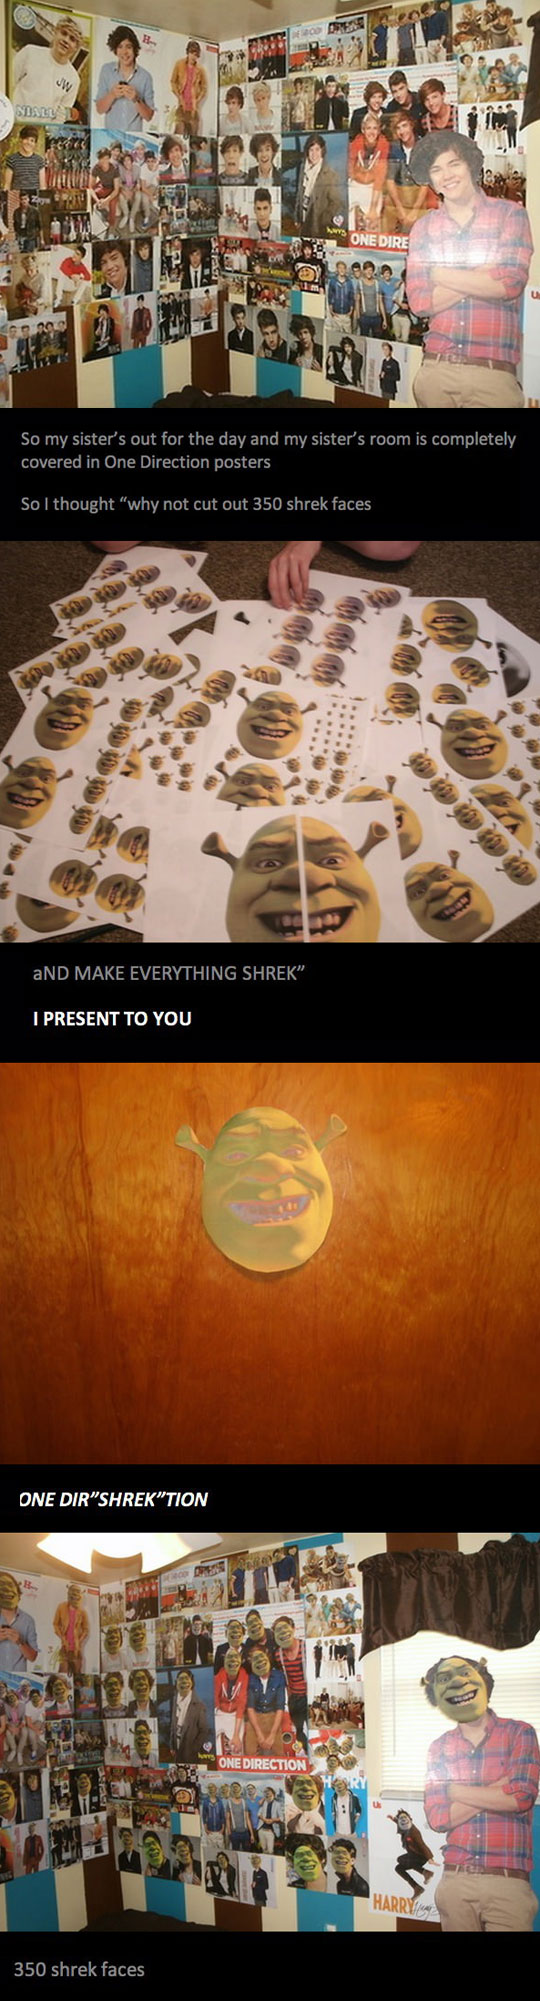 Making Everything Shrek